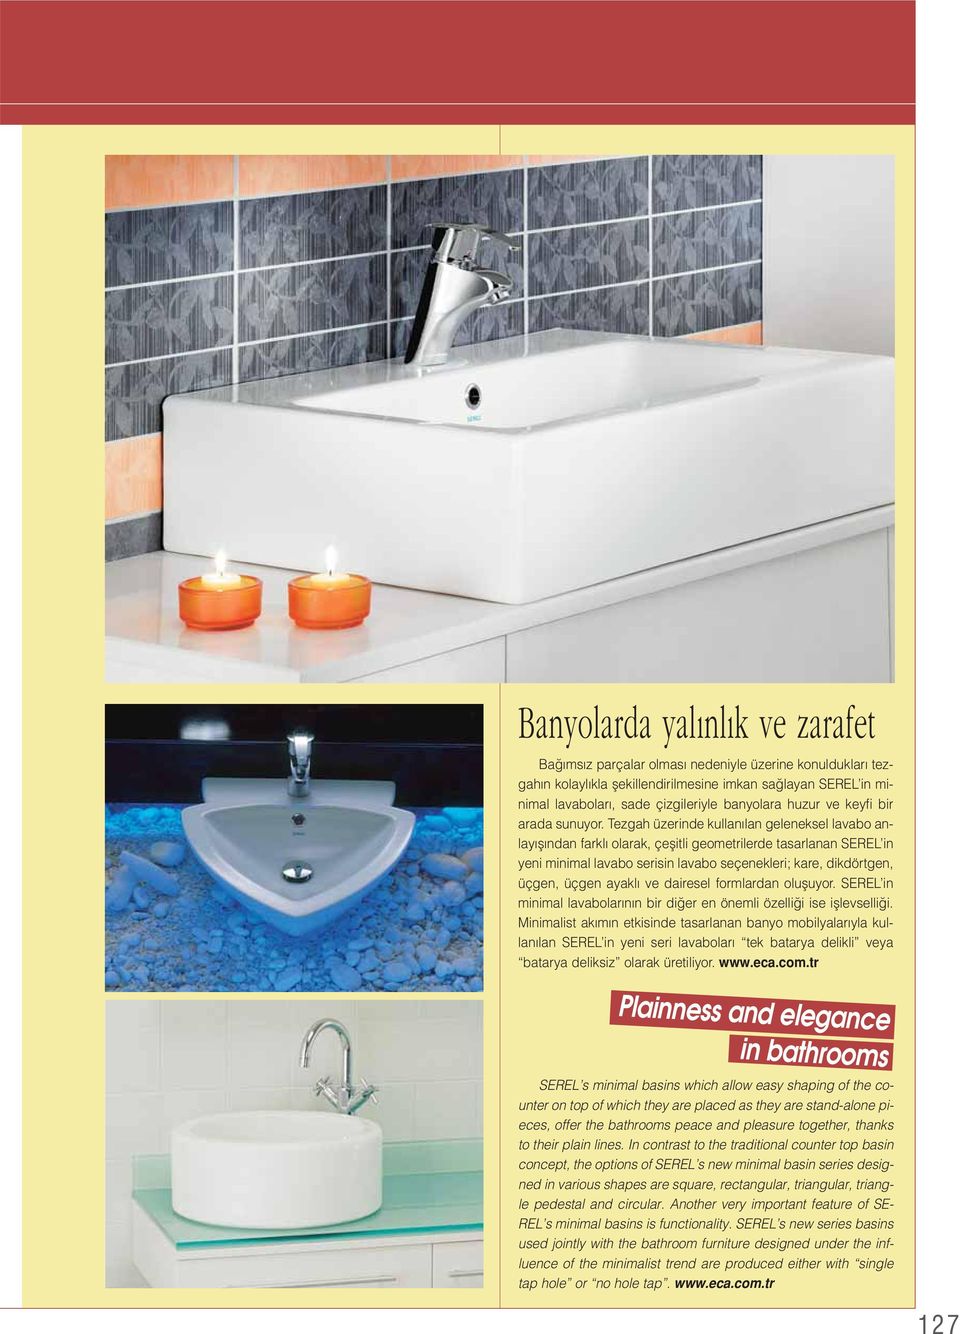 Tezgah üzerinde kullan lan geleneksel lavabo anlay fl ndan farkl olarak, çeflitli geometrilerde tasarlanan SEREL in yeni minimal lavabo serisin lavabo seçenekleri; kare, dikdörtgen, üçgen, üçgen